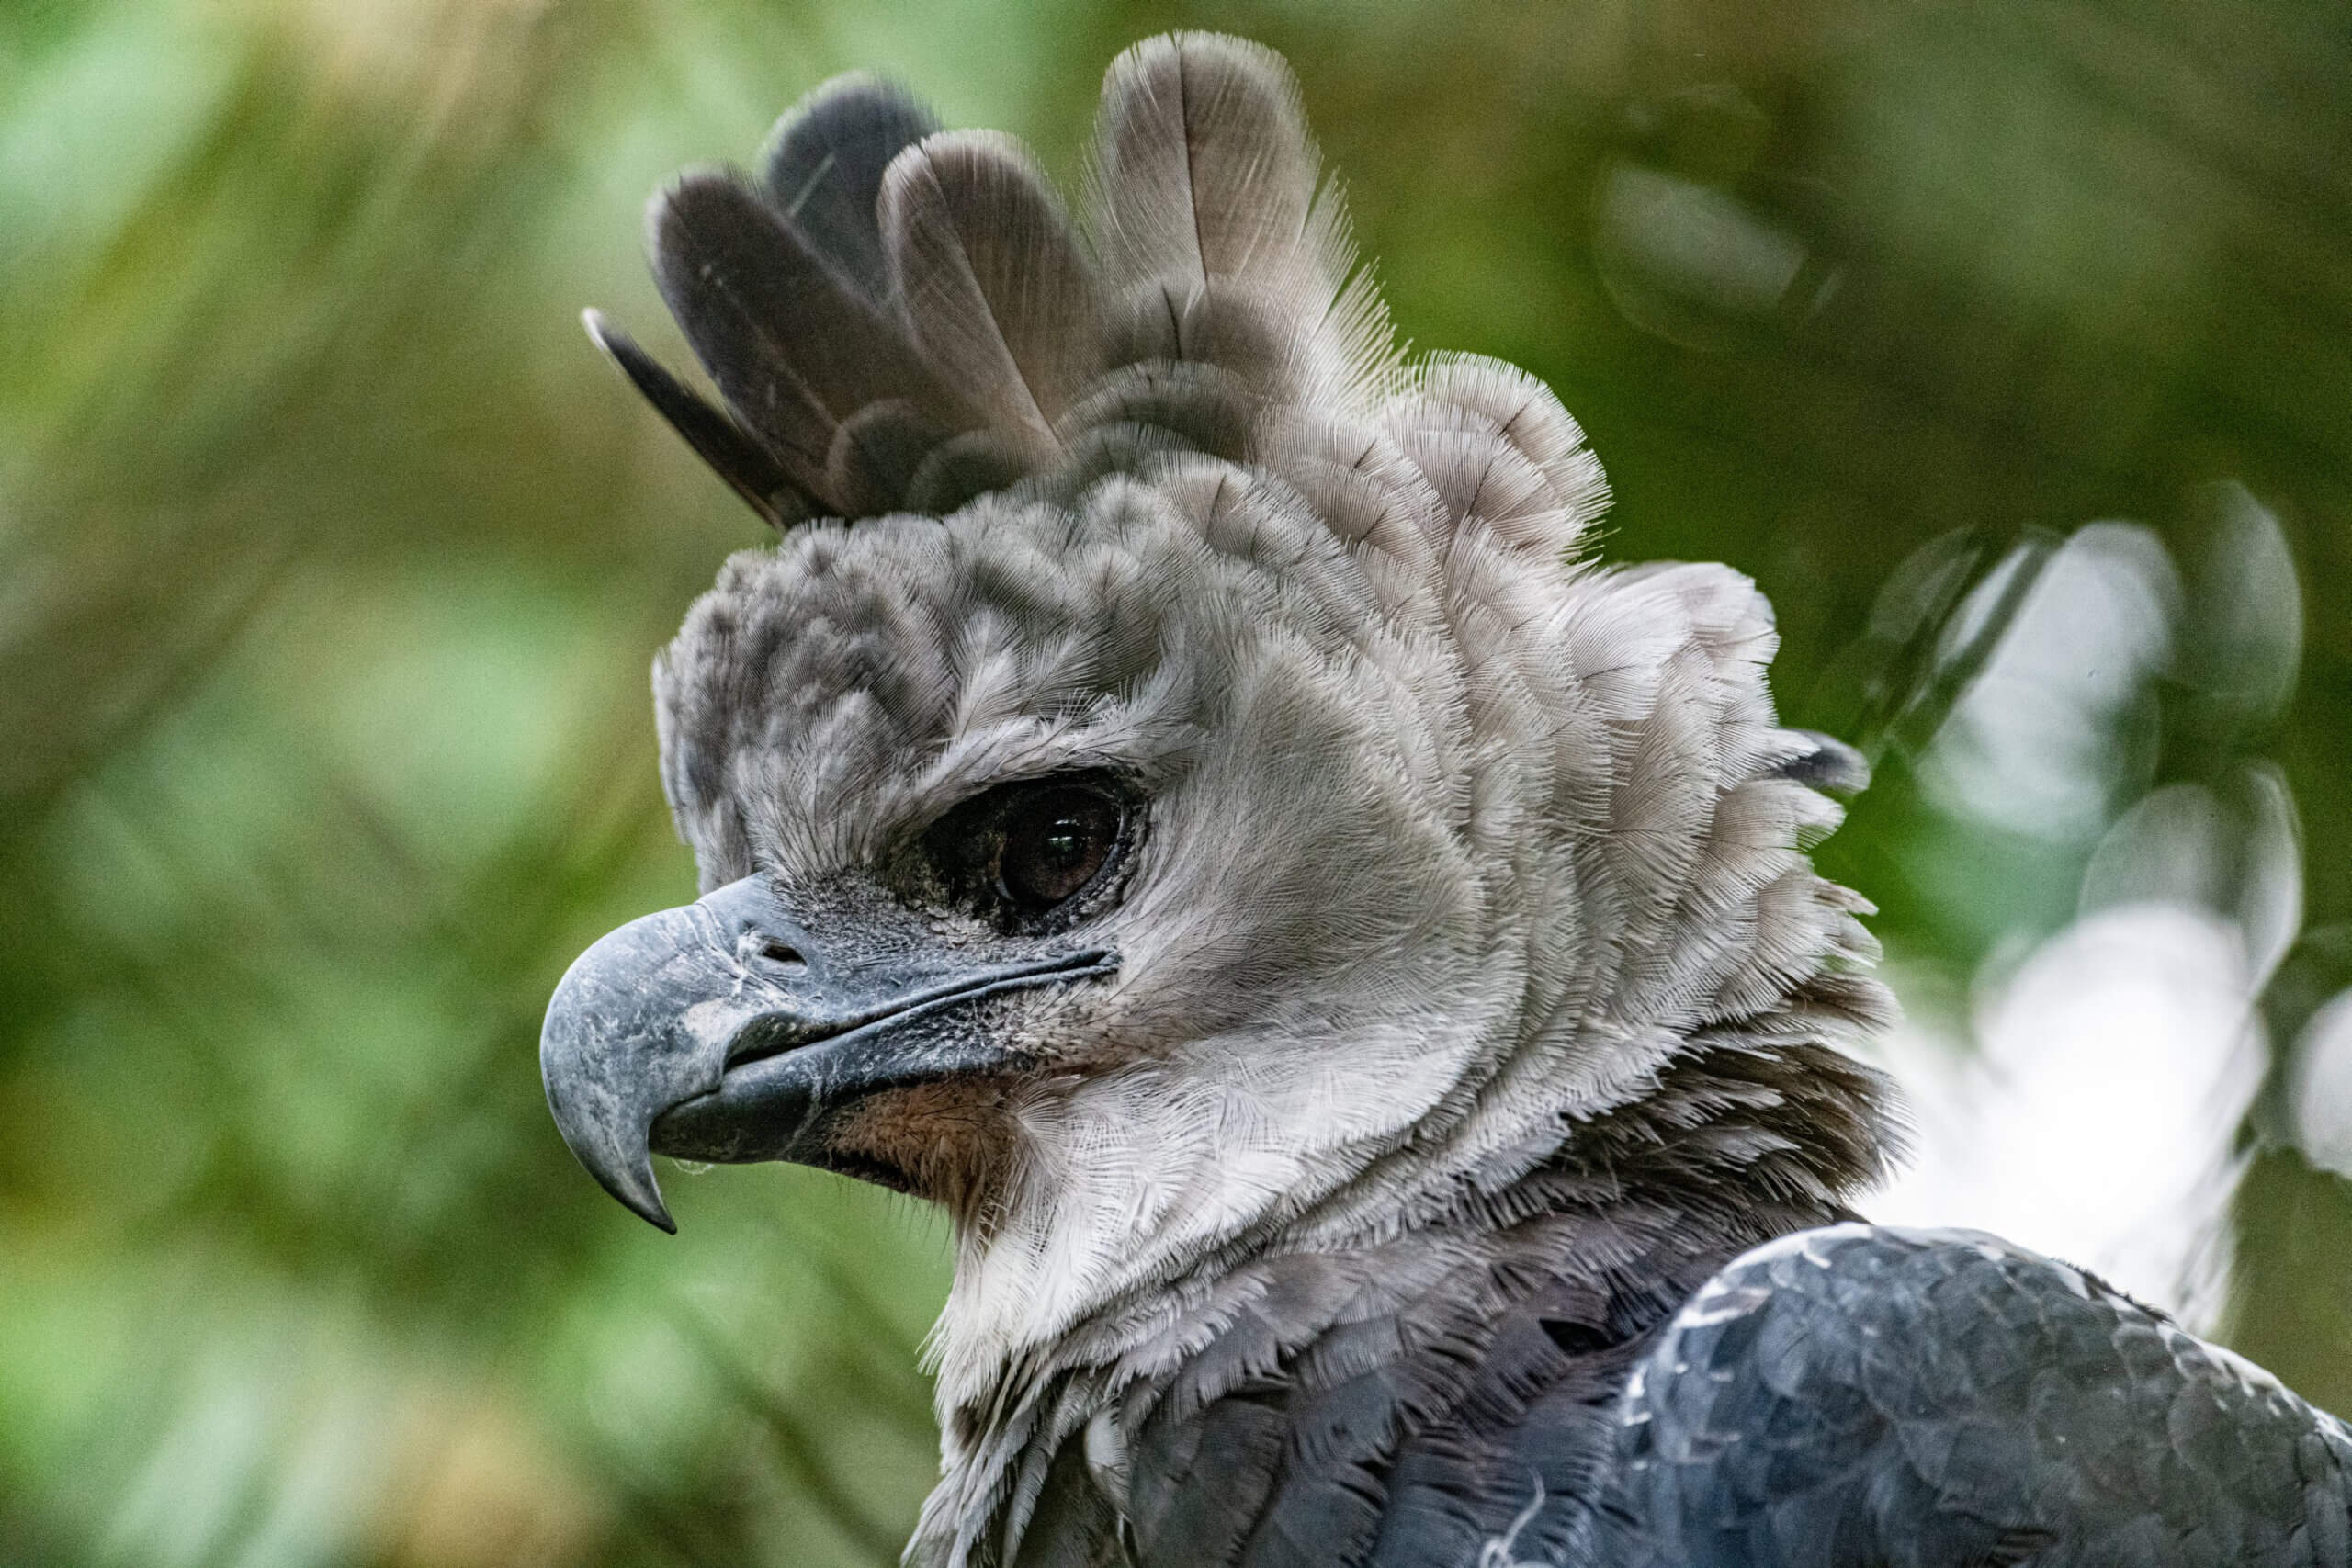 Hoy es el día de 'Panamá': el Día del Águila Harpía, nuestra Ave Nacional |